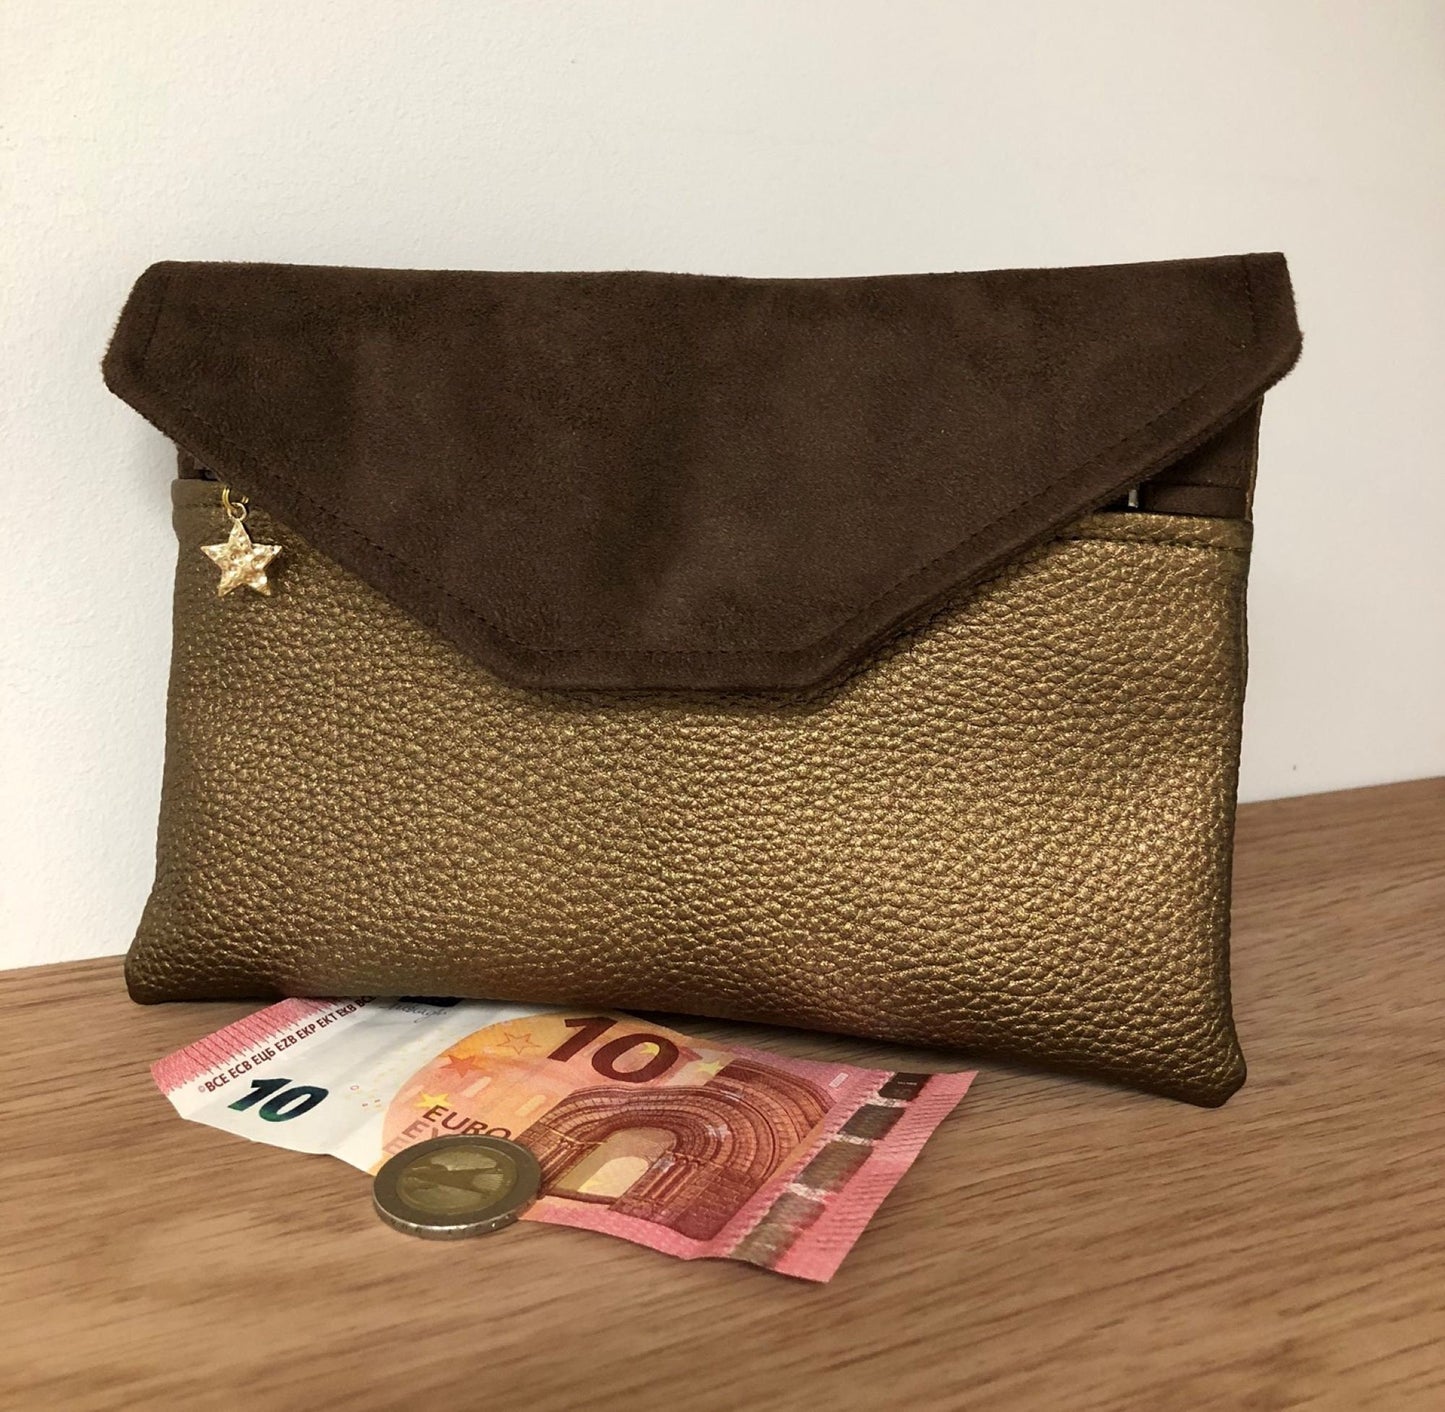 Iridescent brown bag companion